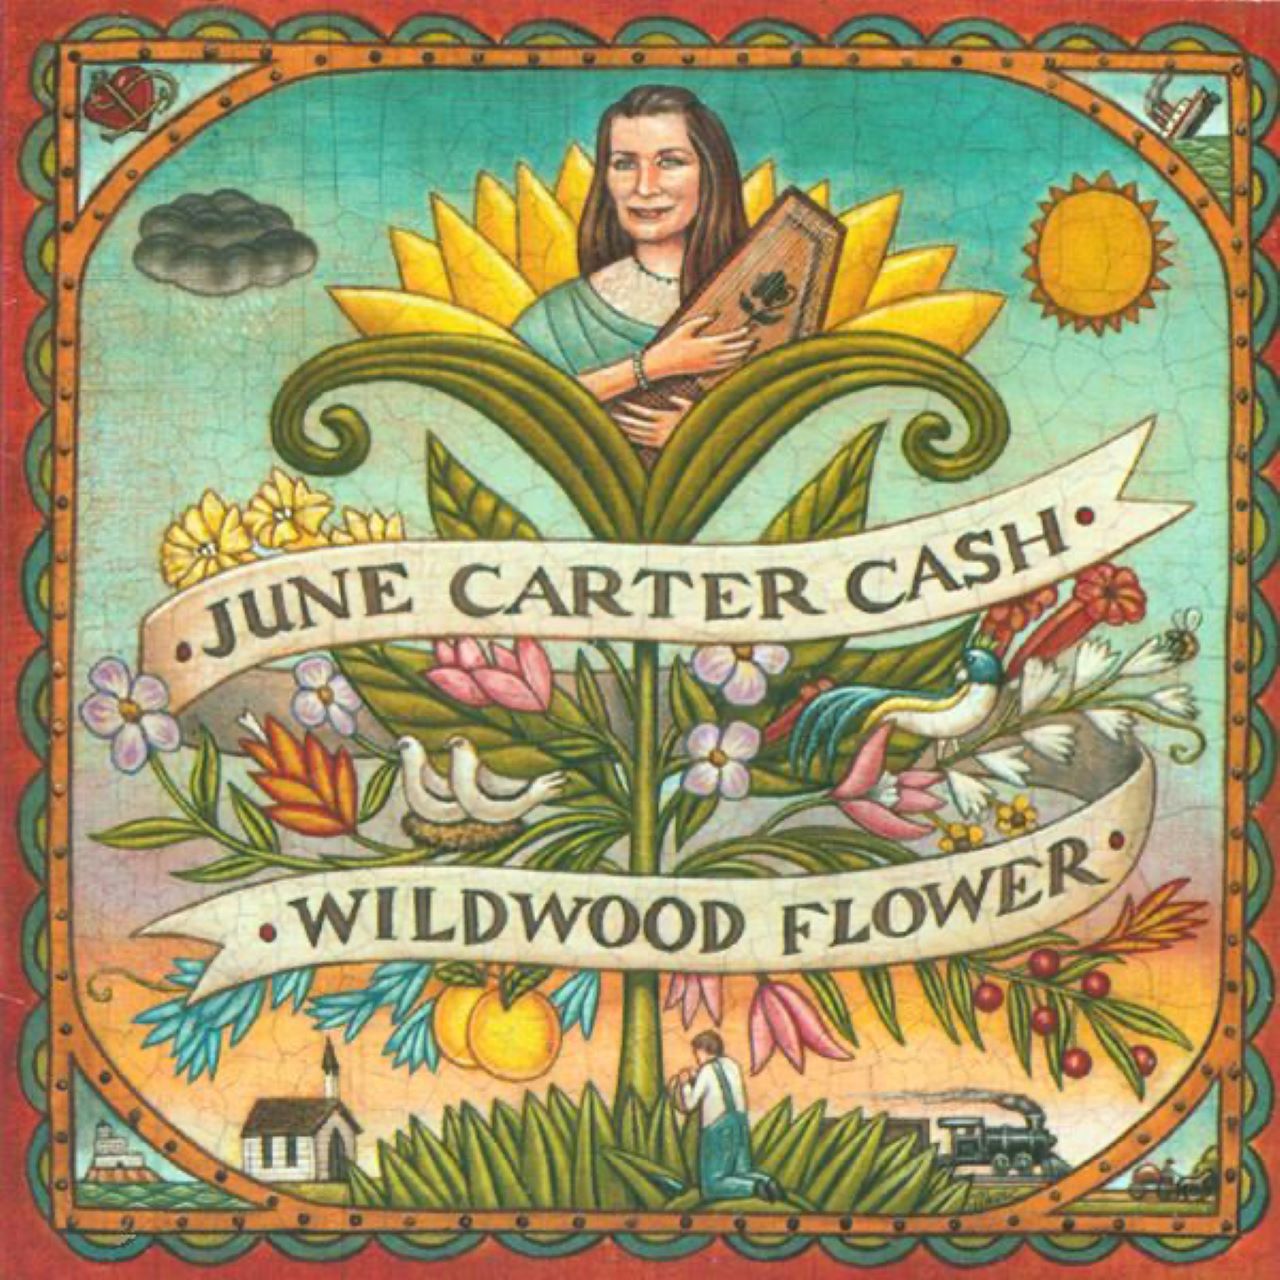 June Carter Cash - Wildwood Flower cover album